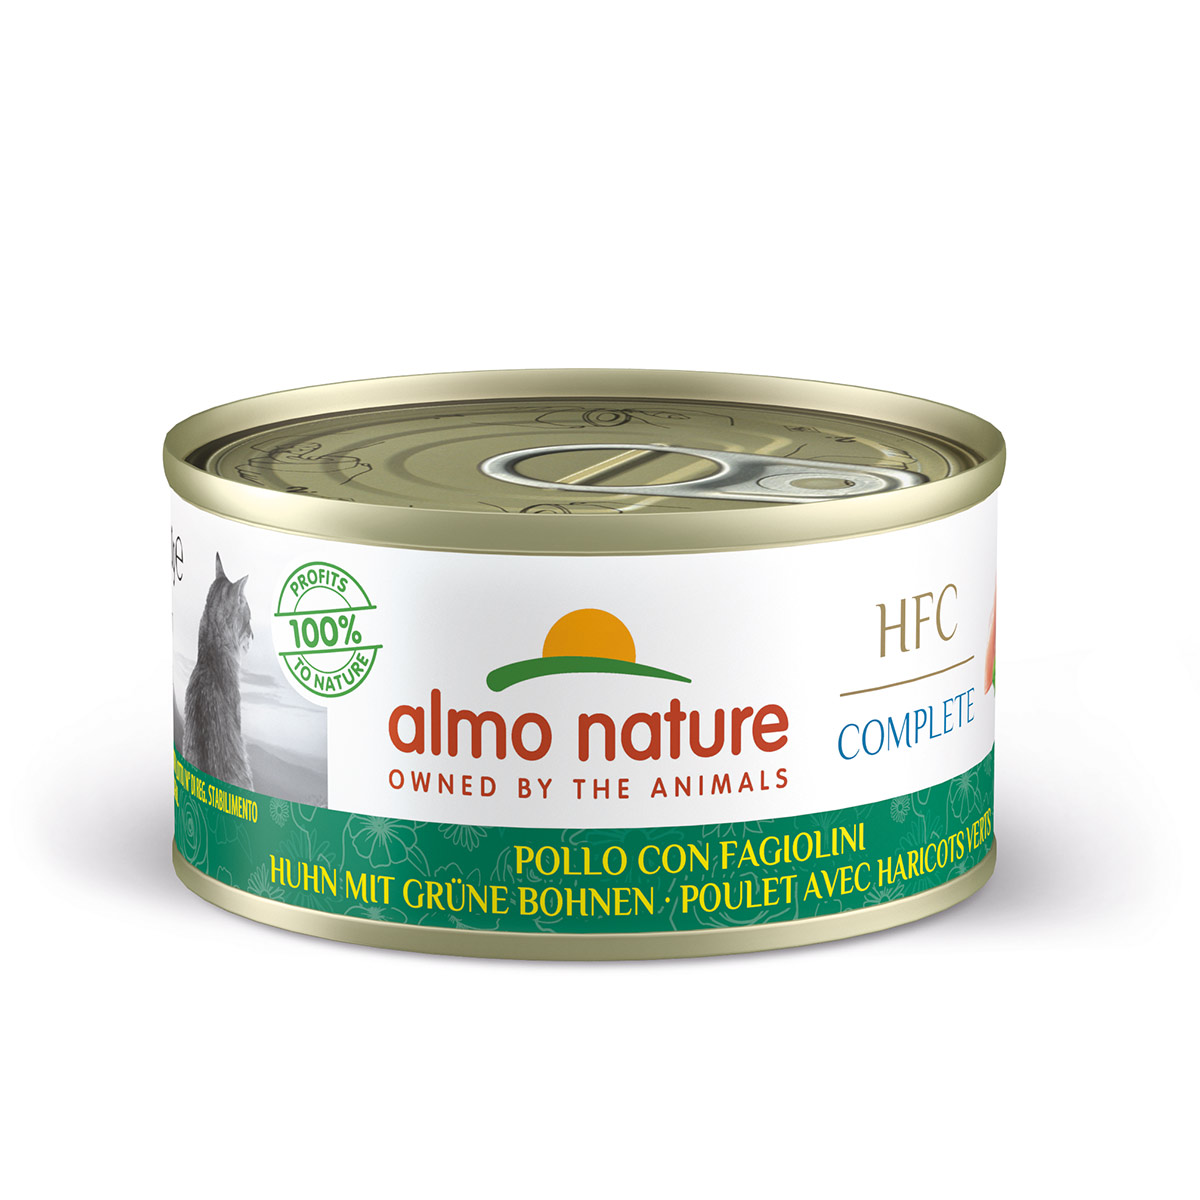 Almo nature HFC complete Huhn mit grünen Bohnen 70g